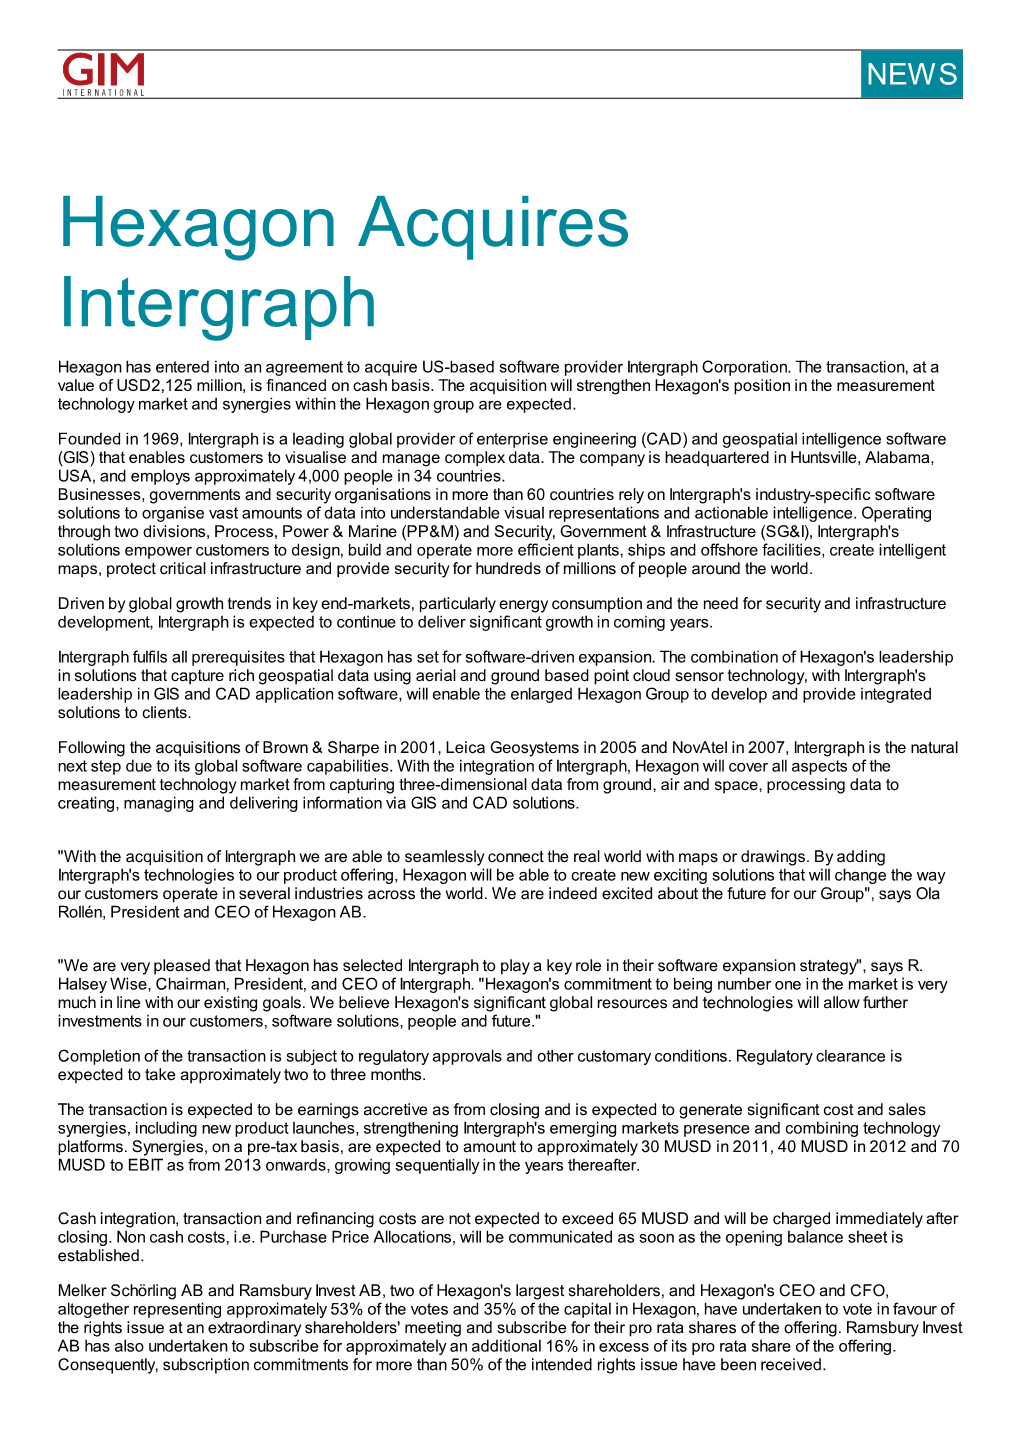 Hexagon Acquires Intergraph